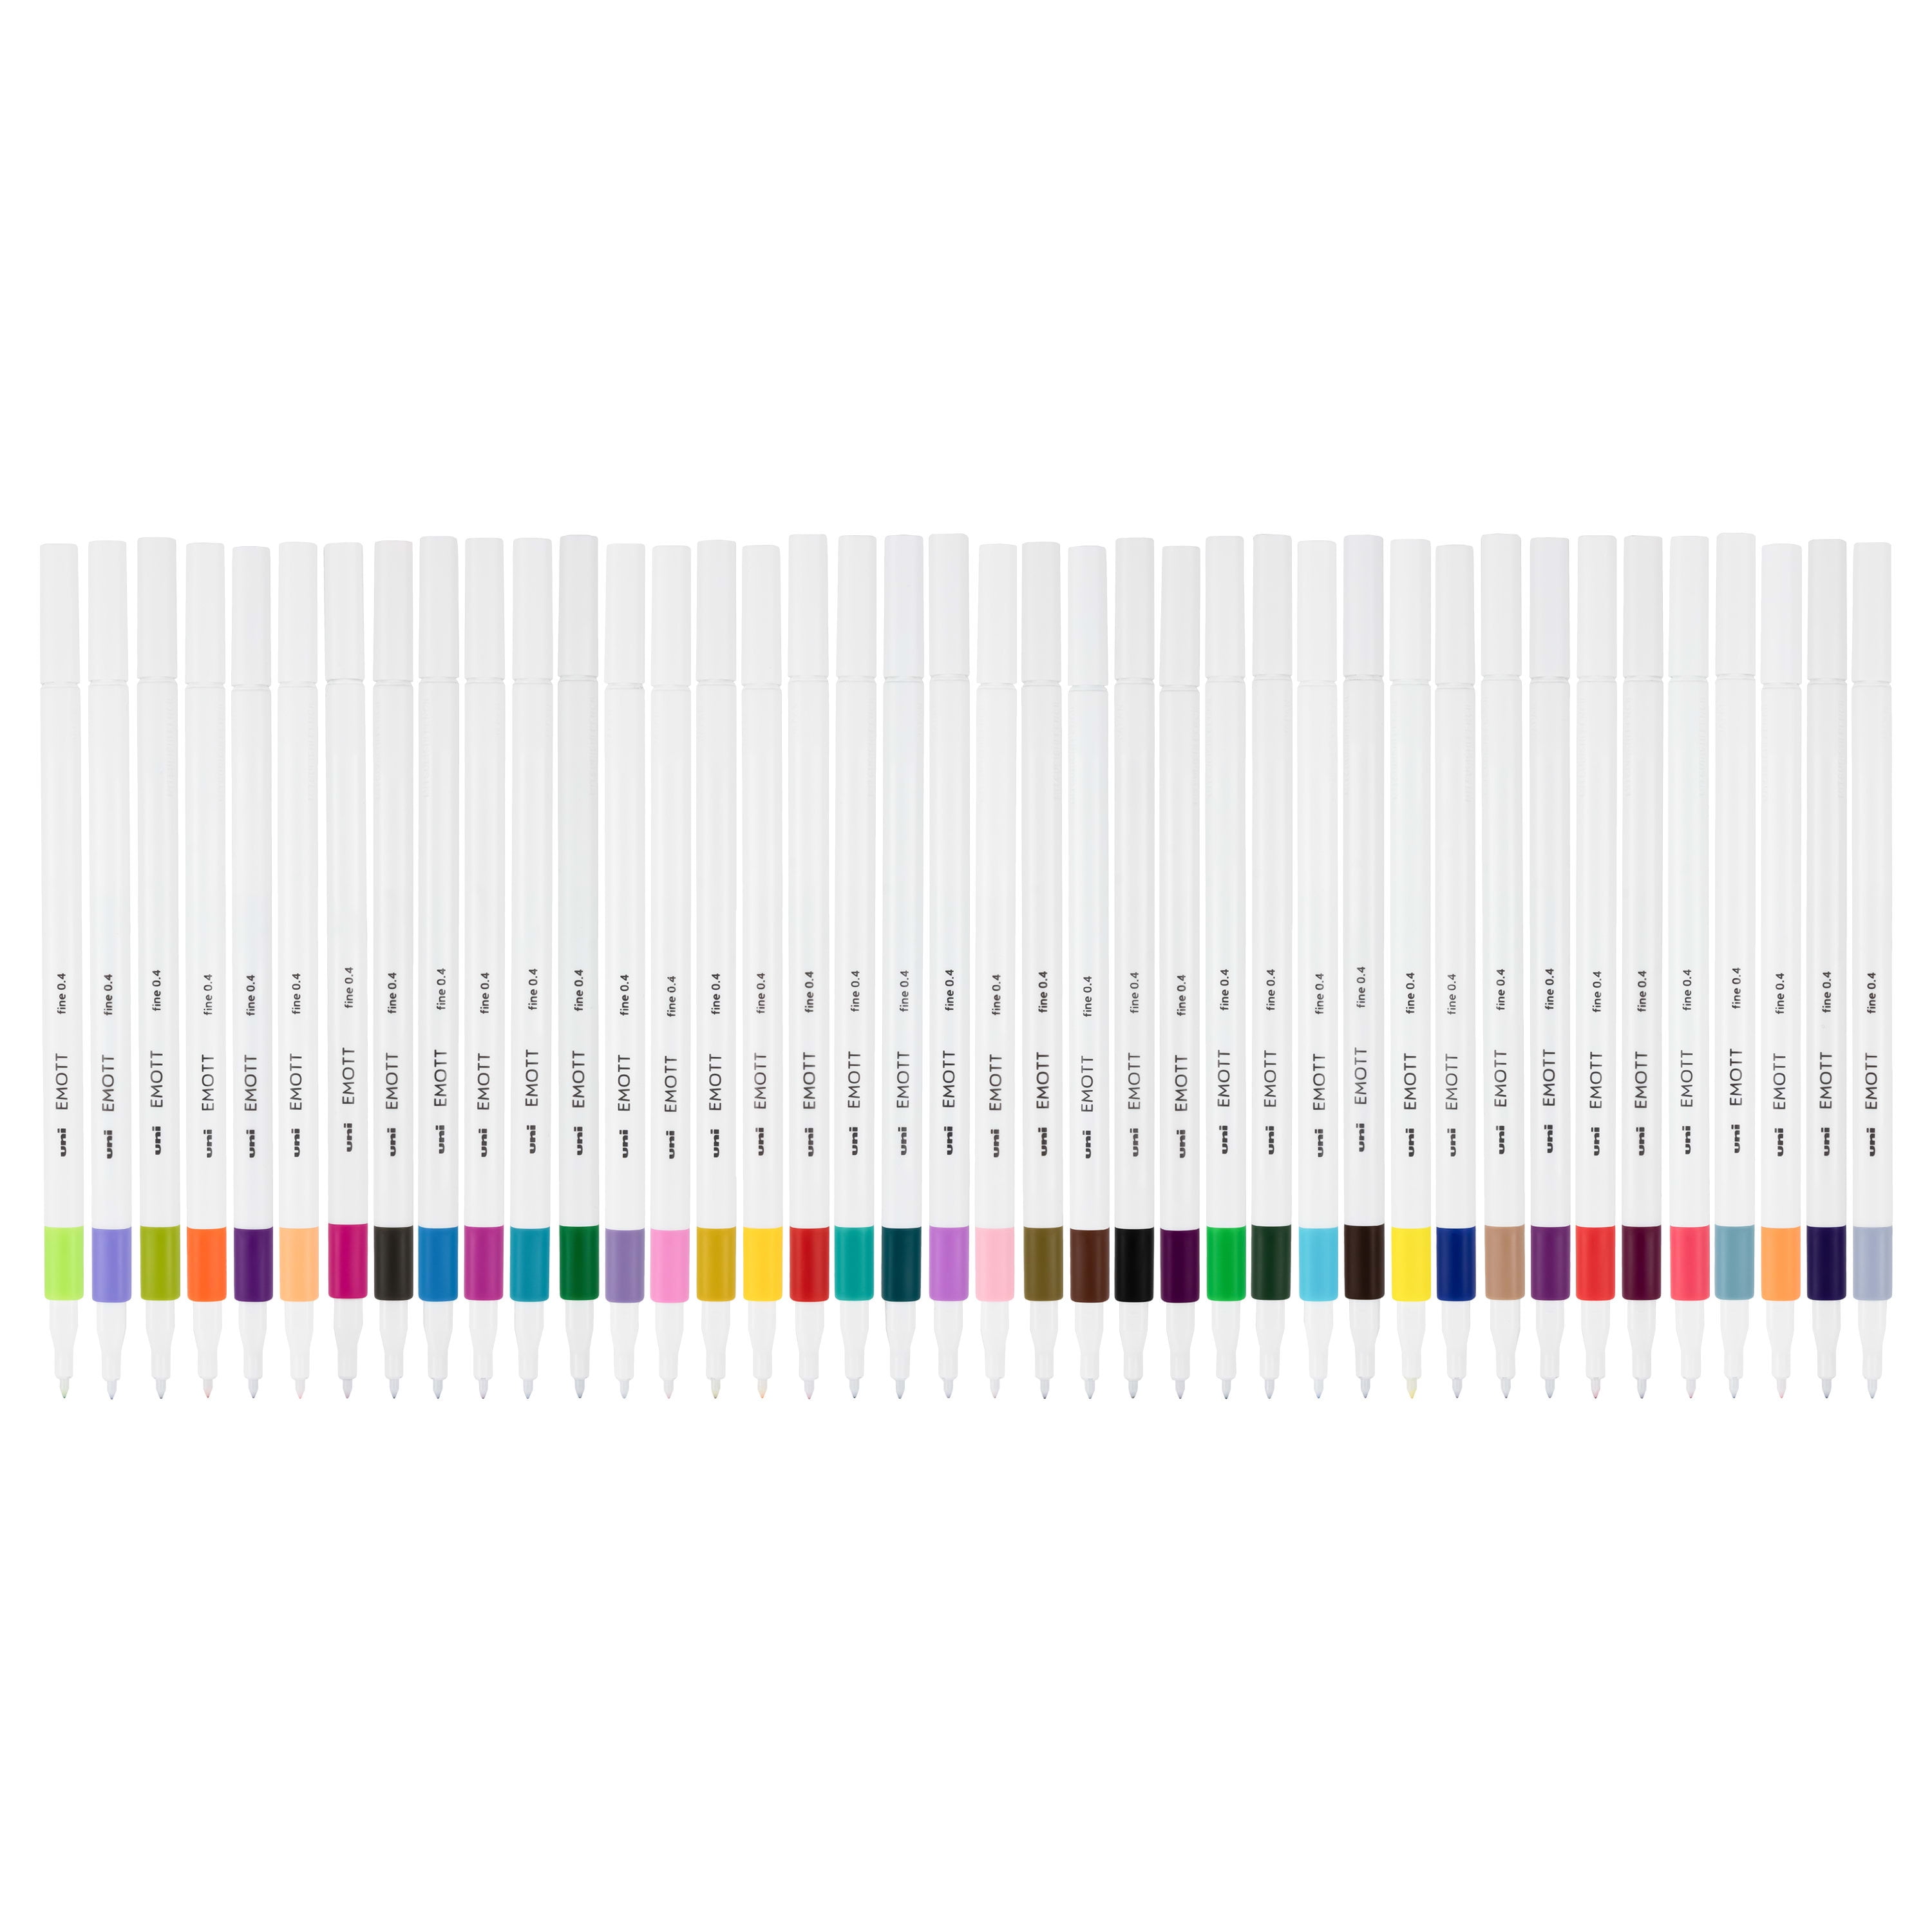 Emott Fineliner Pens Soft Colors Box of 10 – GREER Chicago